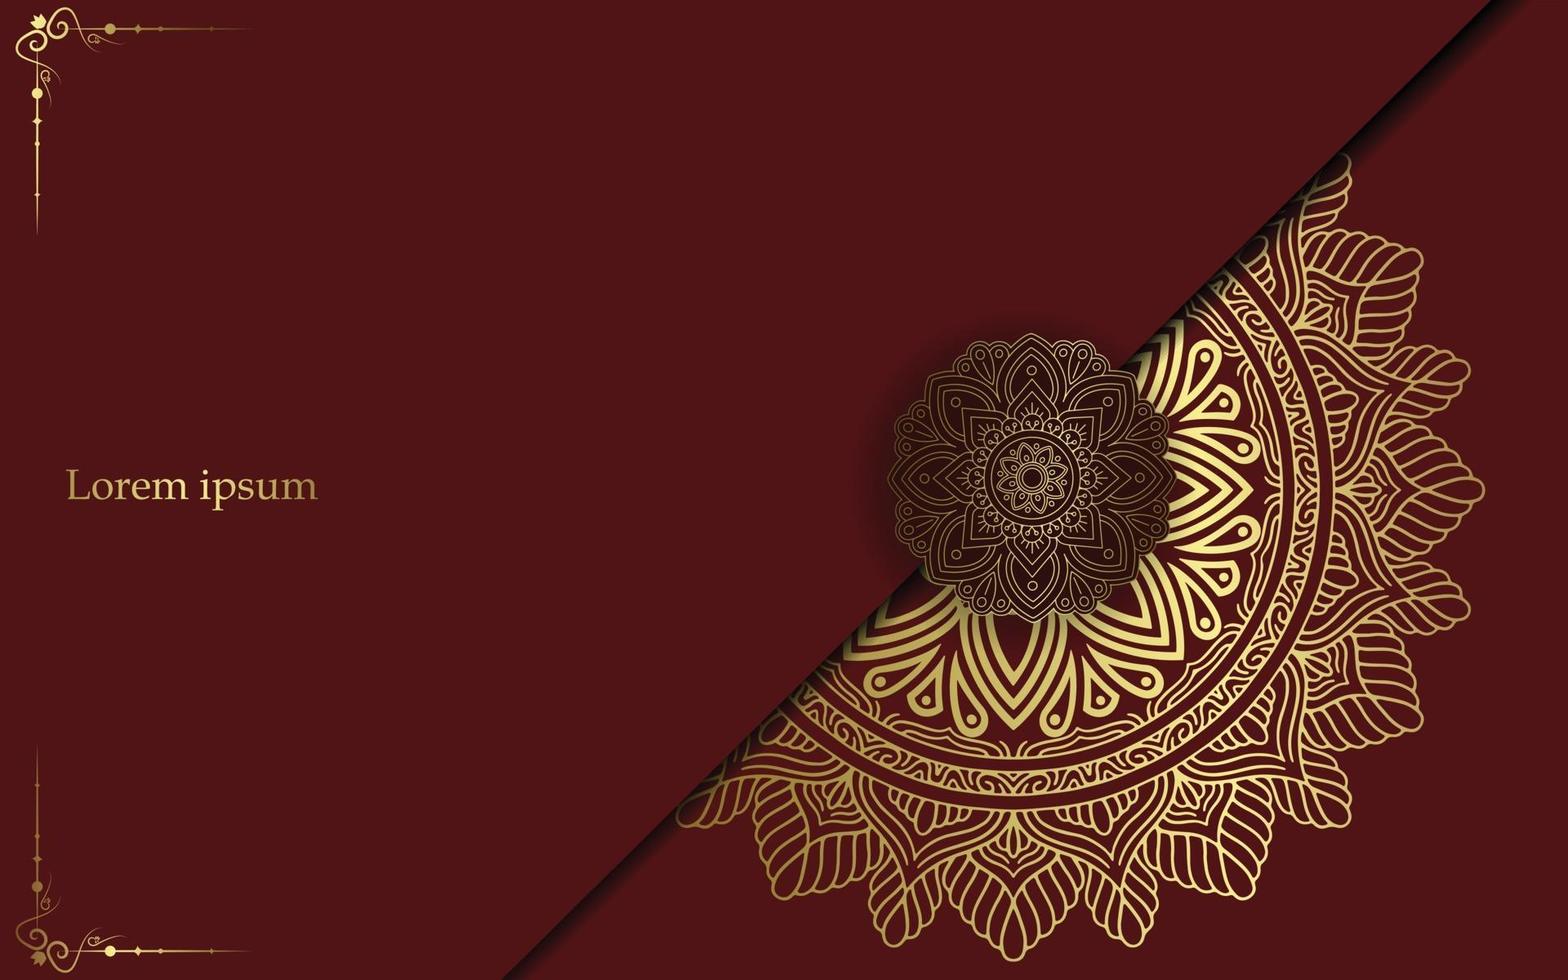 Luxus-Mandala-Hintergrund mit goldener Arabeske vektor